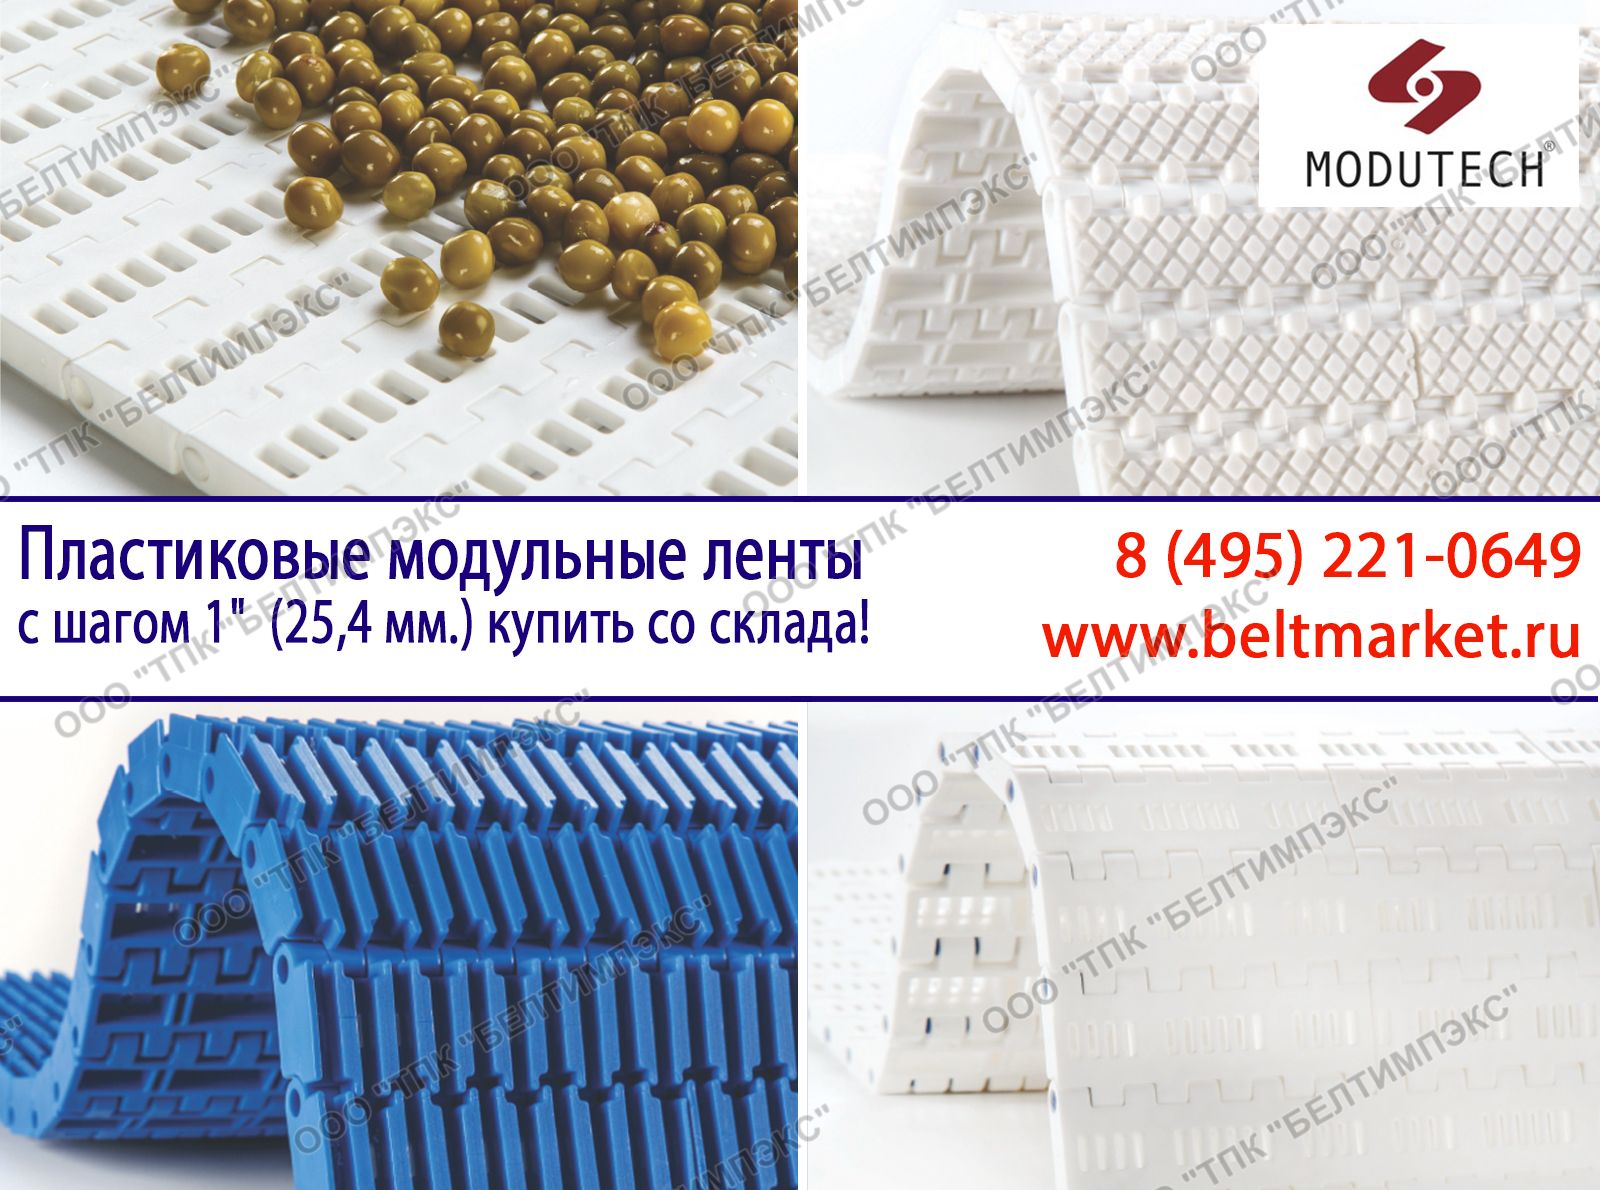 Пластиковые модульные ленты с шагом 1дюйм (25,4 мм.) купить со склада в Москве